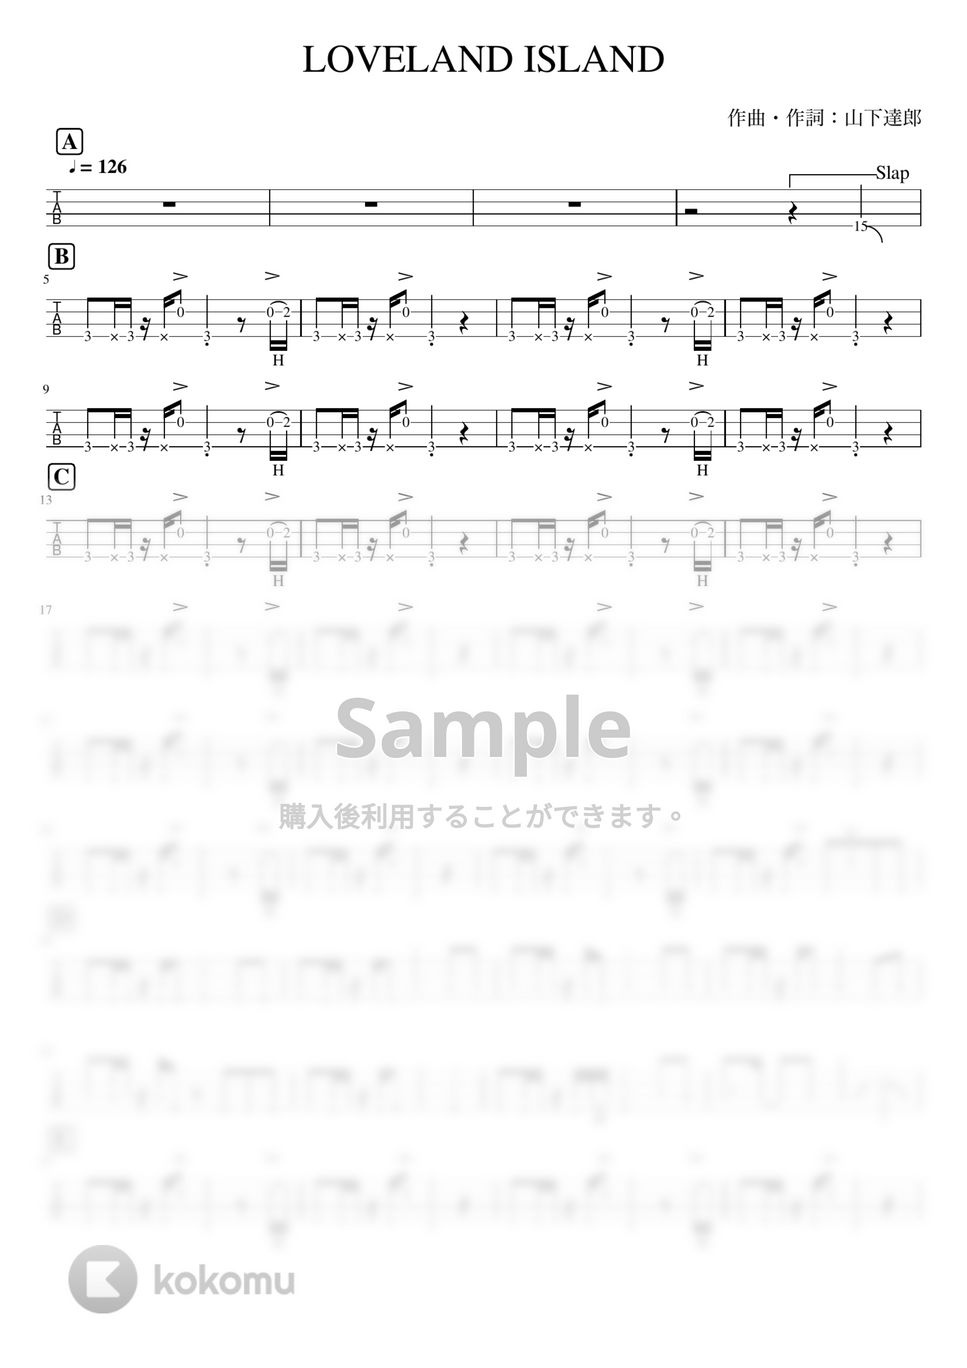 山下達郎 - LOVELAND, ISLAND (ベースTAB譜 / スラップ) by ベースライン研究所たぺ